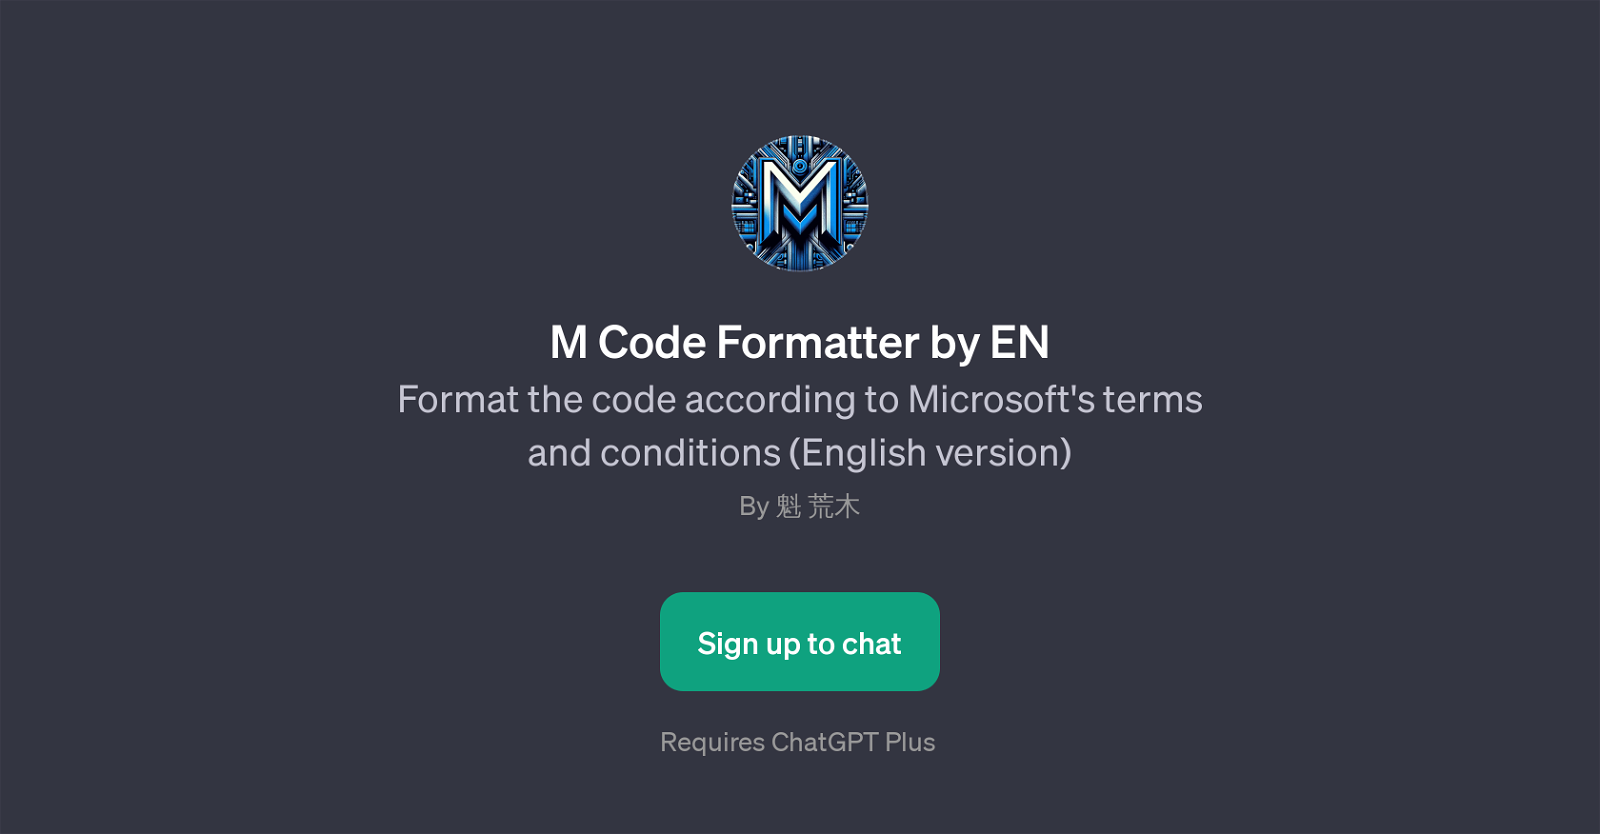 M Code Formatter by EN website